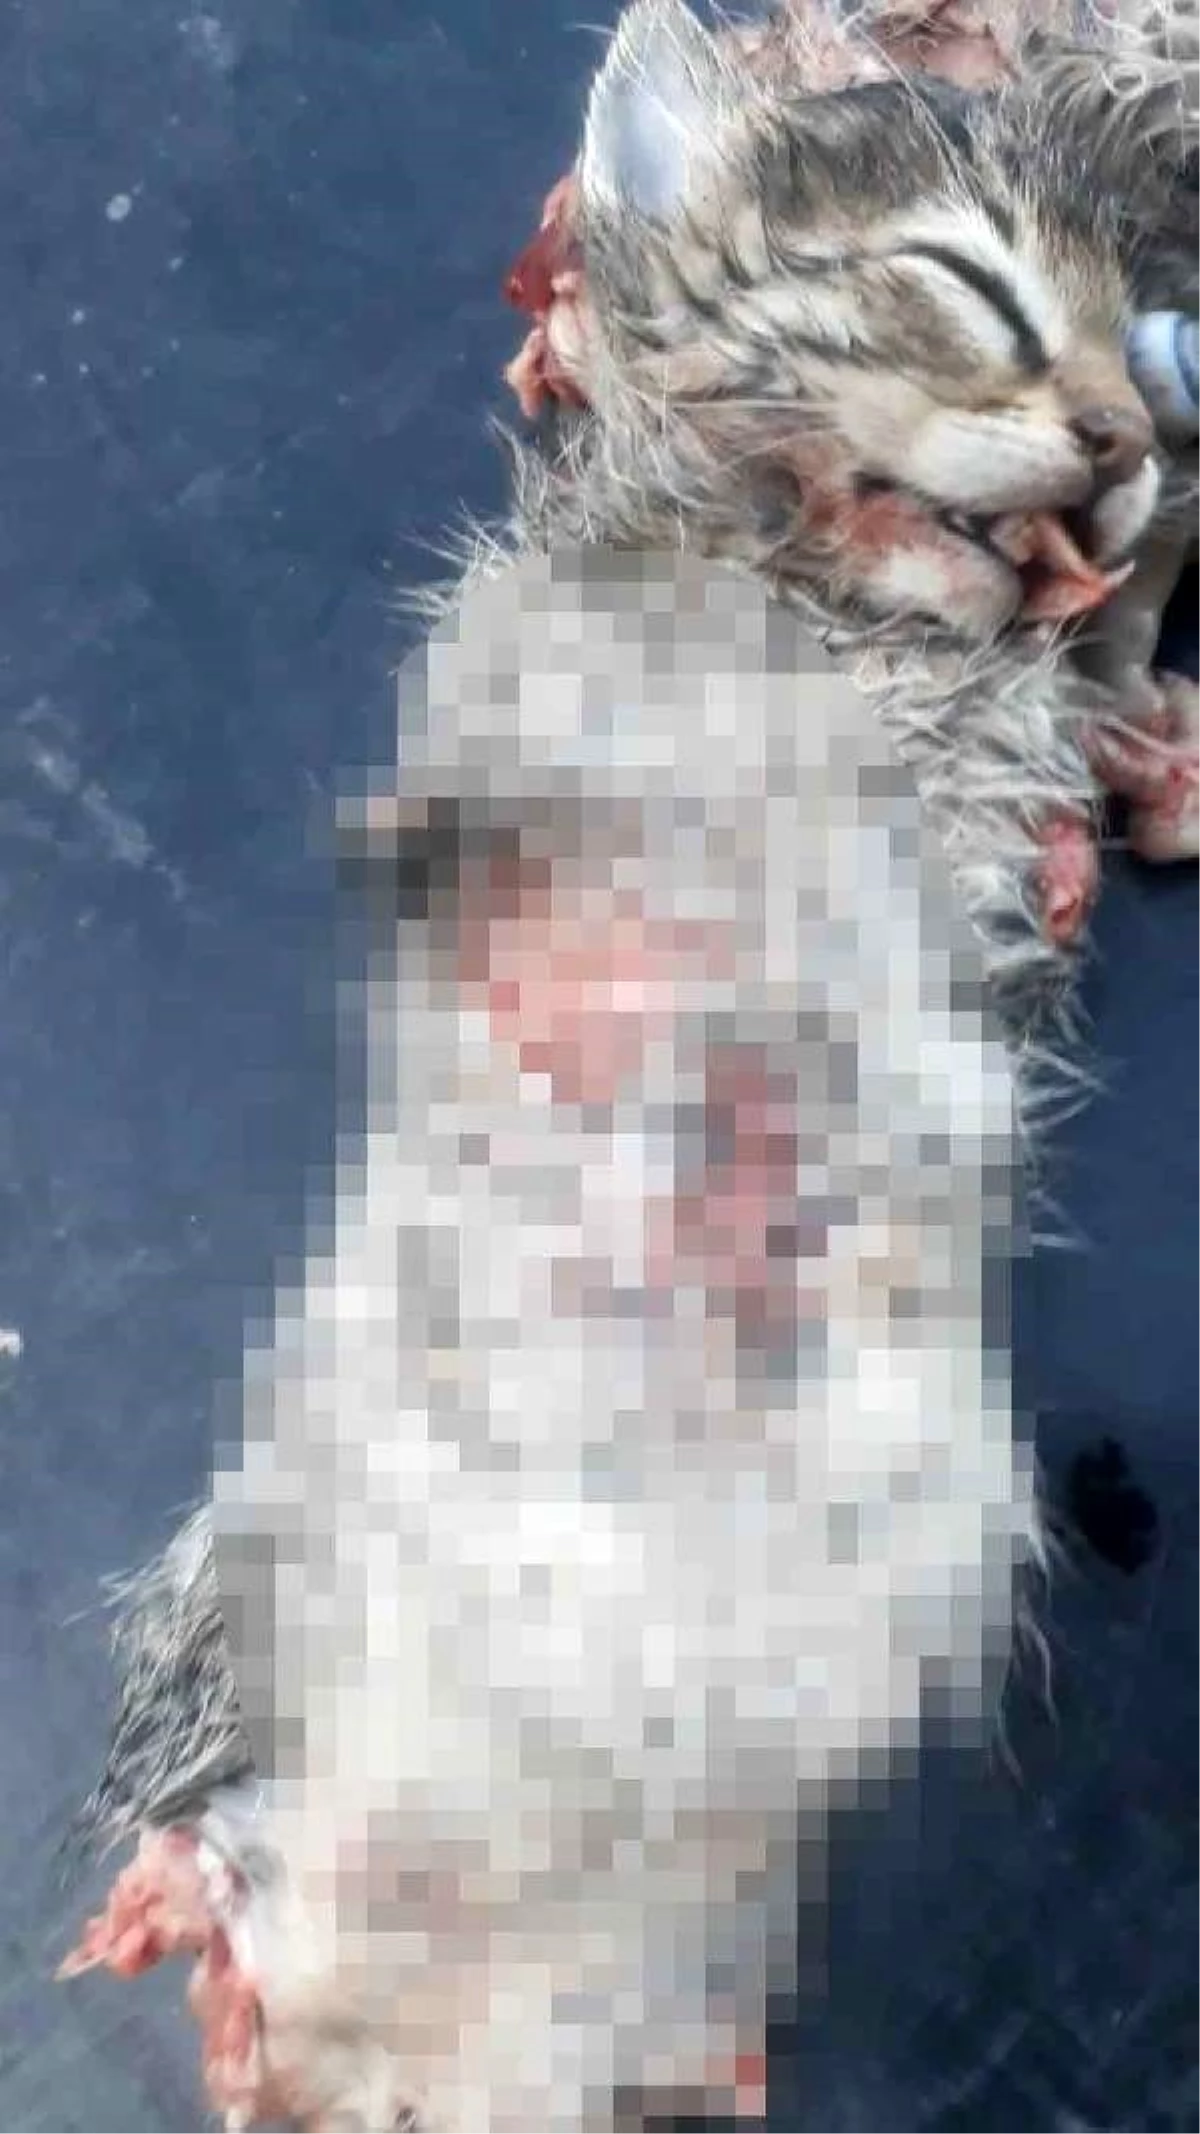 Bacakları ve kuyruğu kesilmiş 2 yavru kedi, ölü bulundu Haberler